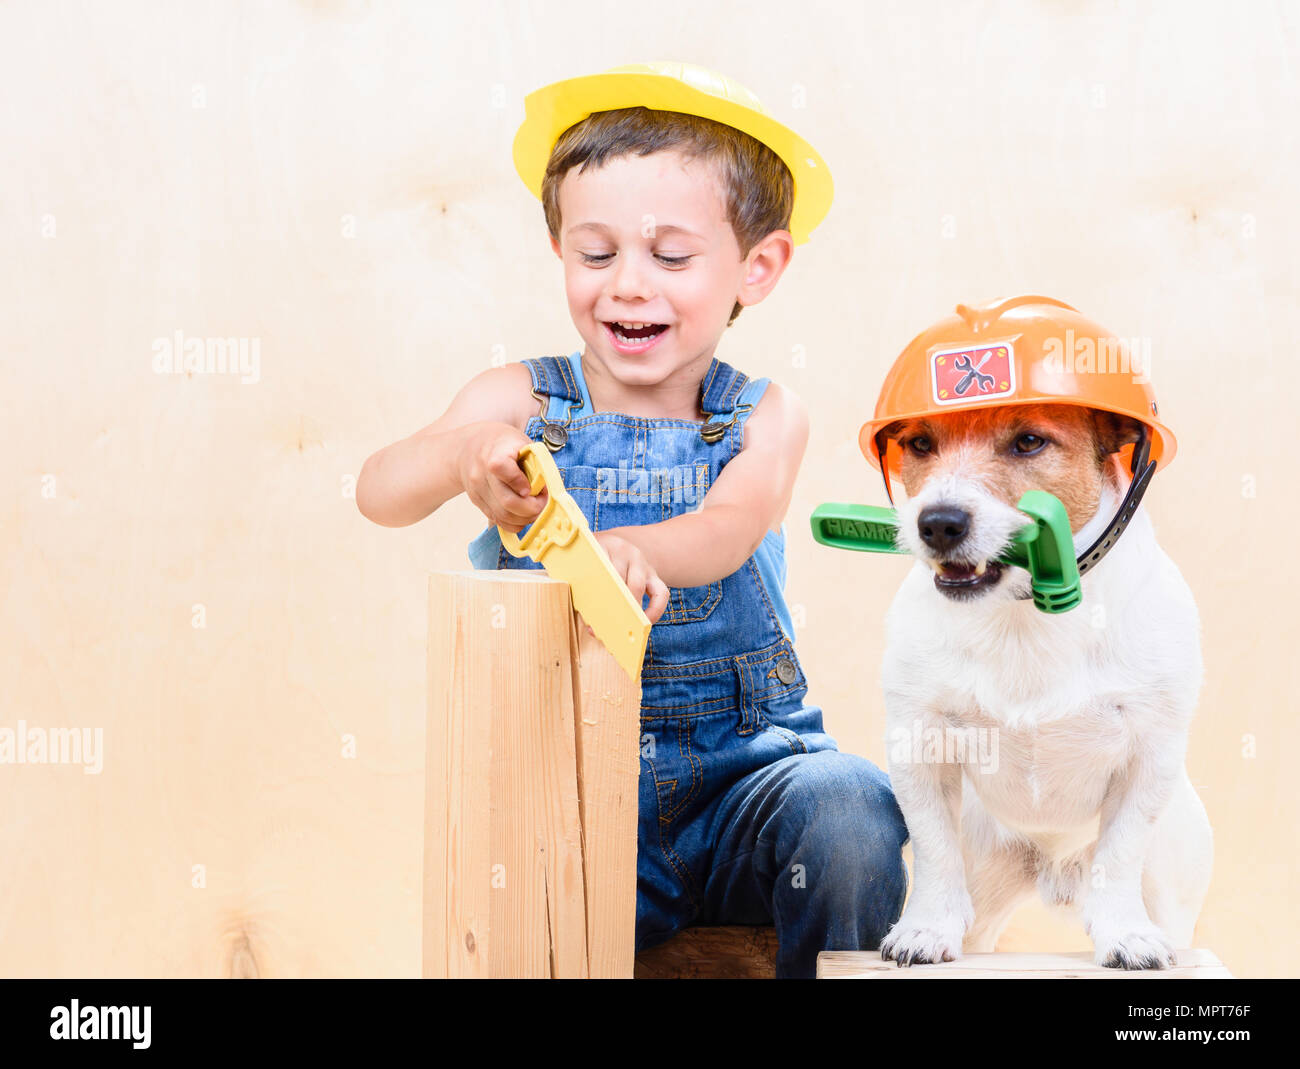 Kind und Hund tragen hardhats Arbeiten mit Säge und Hammer an der Baustelle Stockfoto